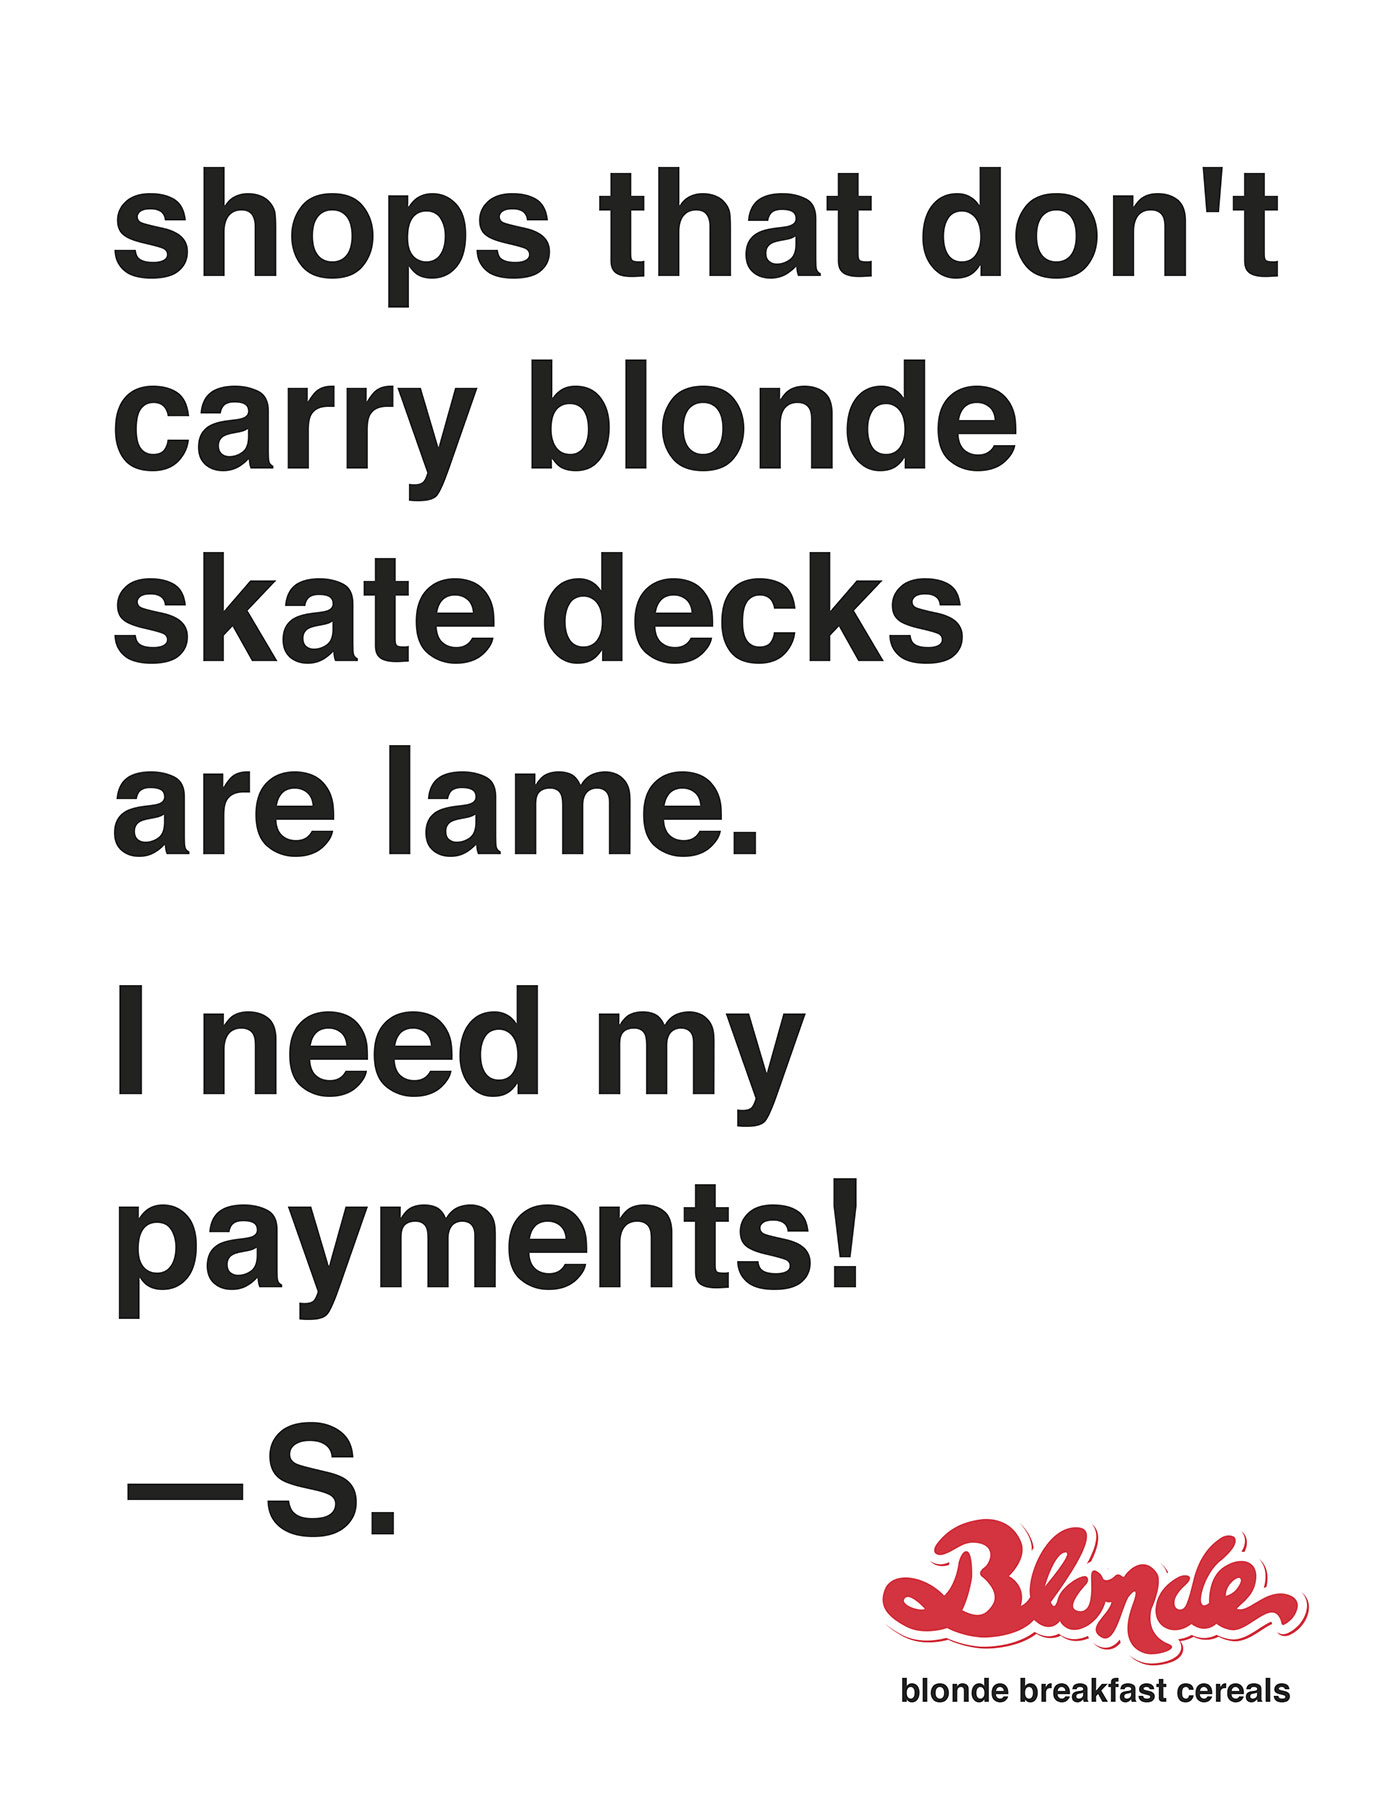 blonde skateboards